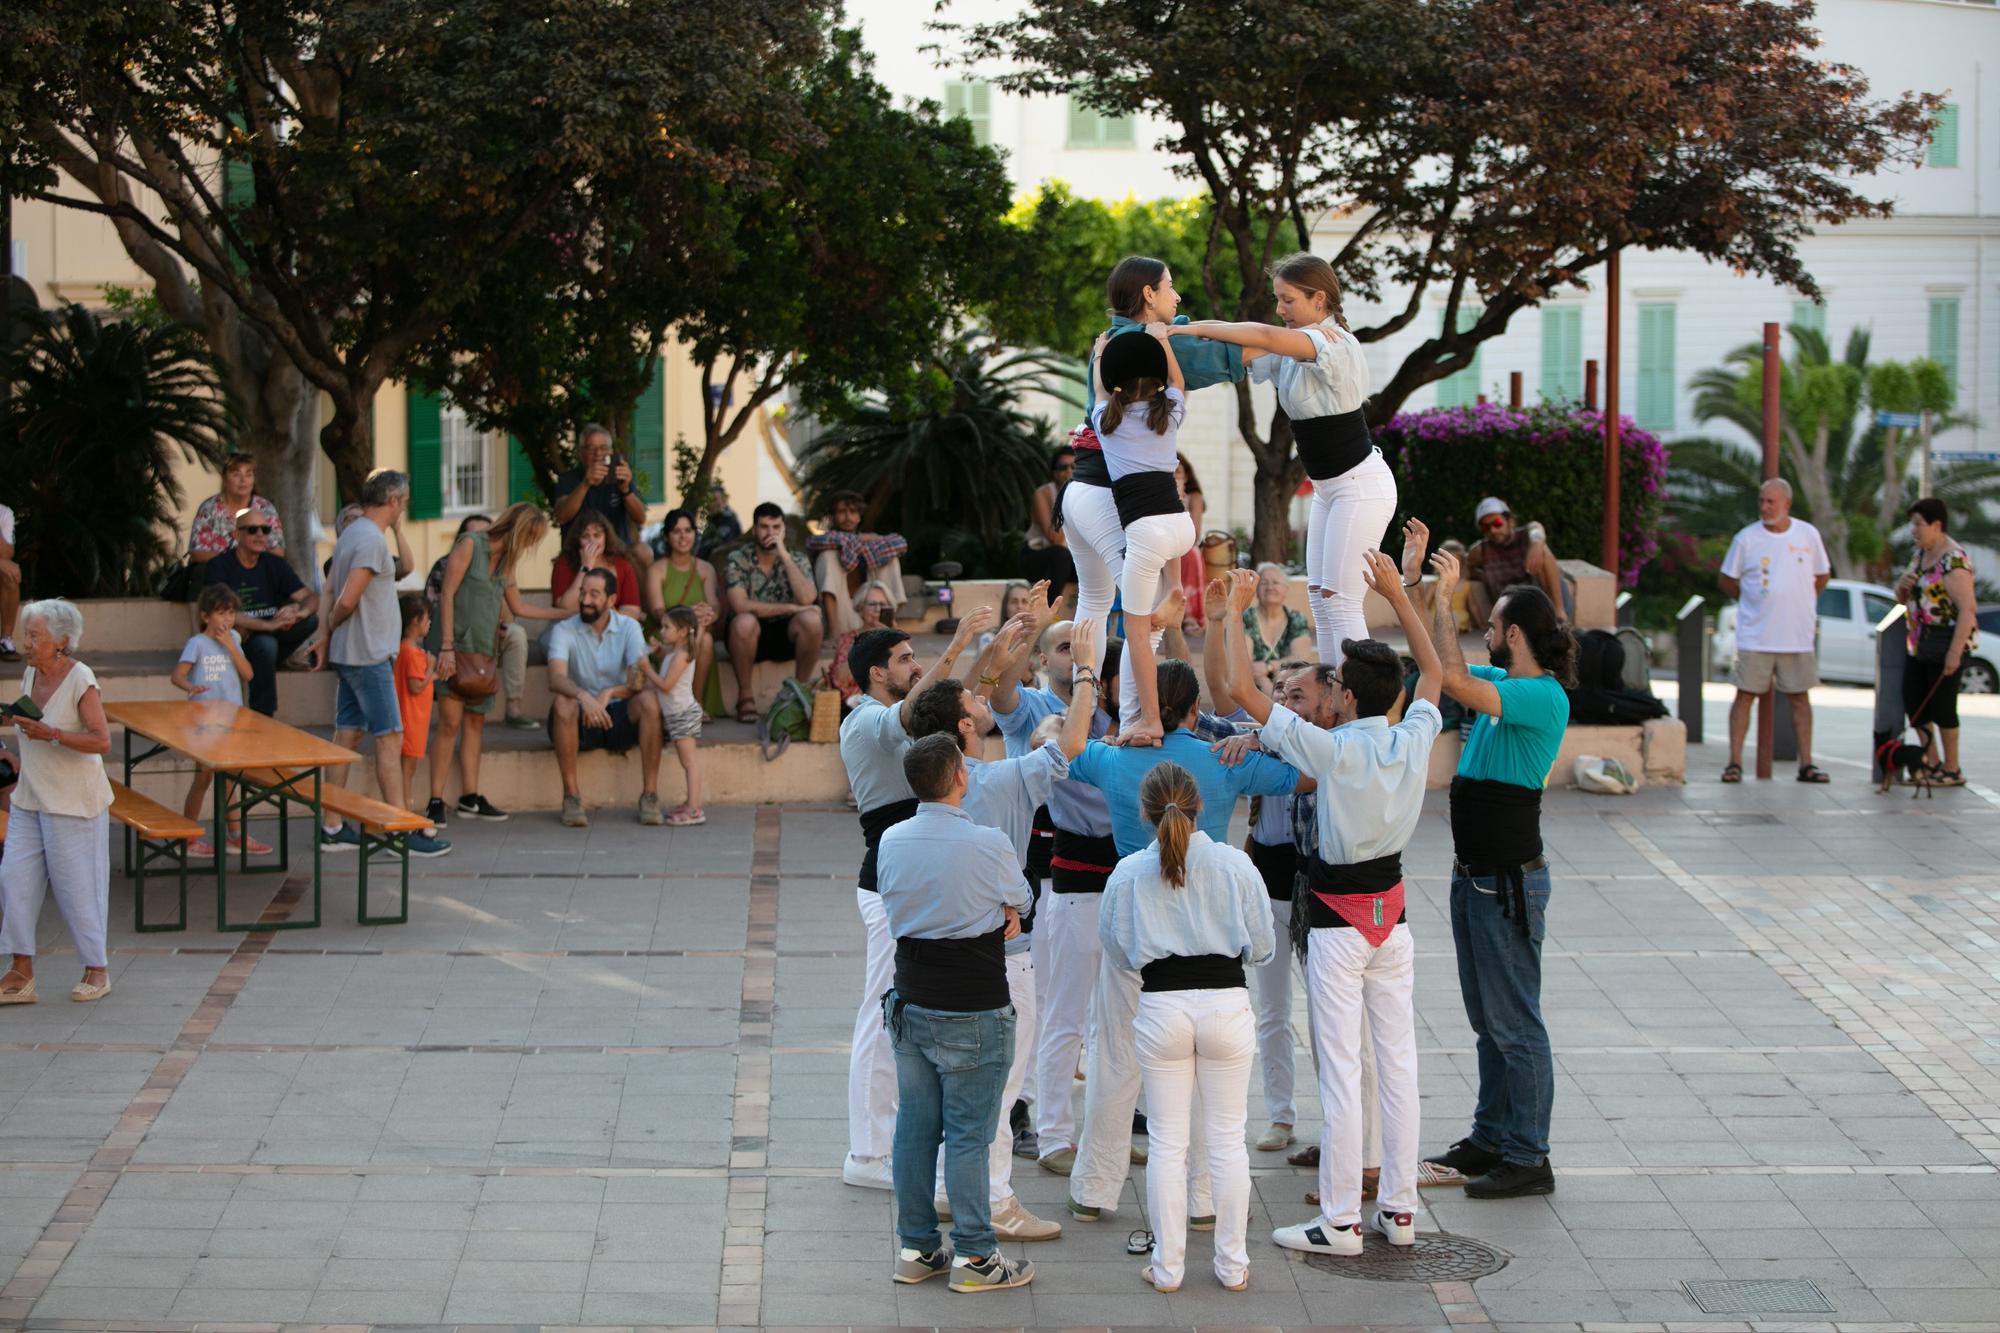 Mira aquí todas las fotos de la noche de San Juan en Ibiza